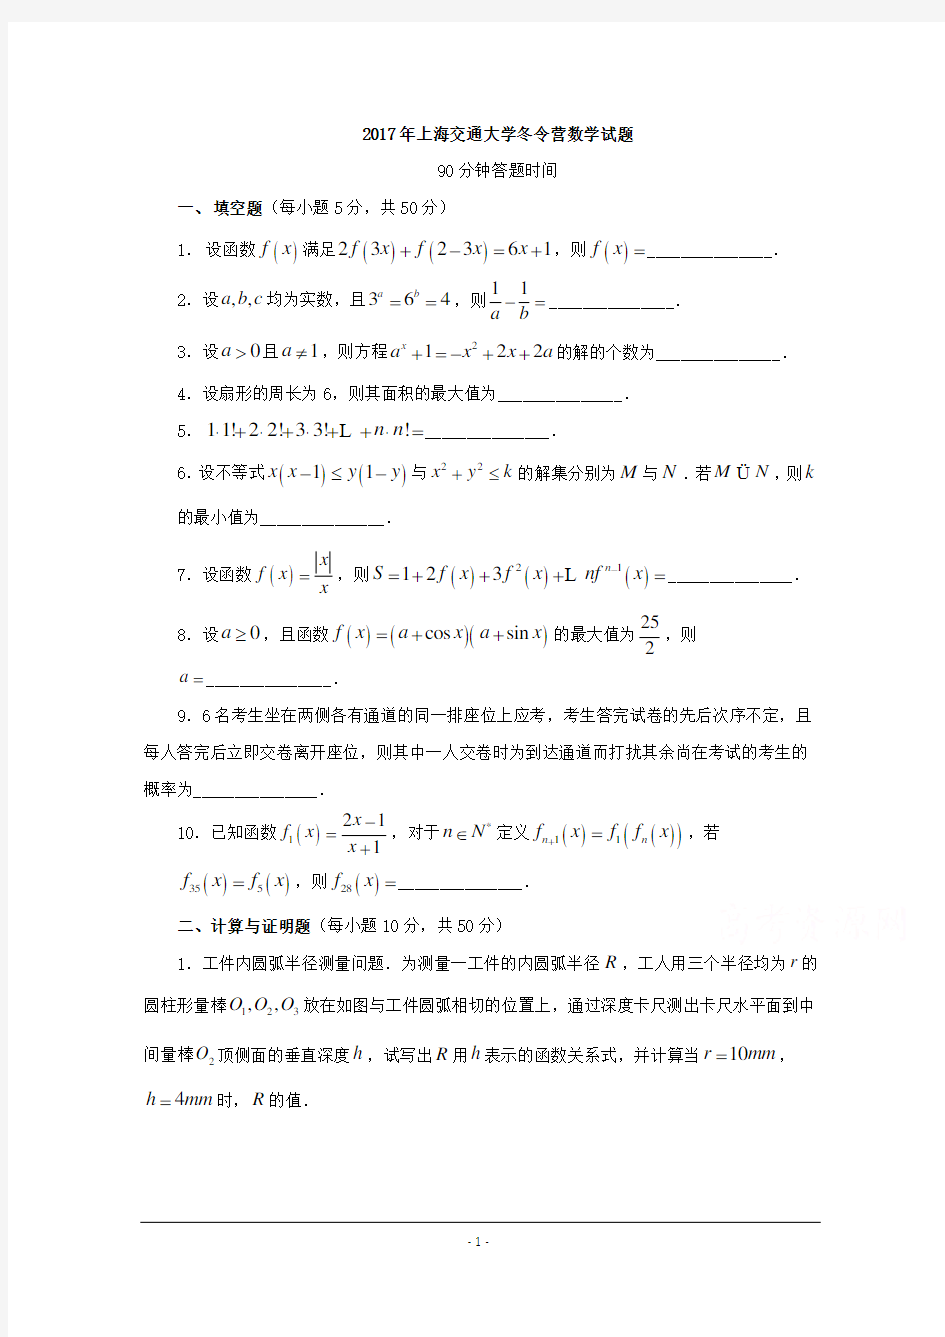 历年自主招生考试数学试题大全2017年上海交通大学冬令营数学试题+Word版